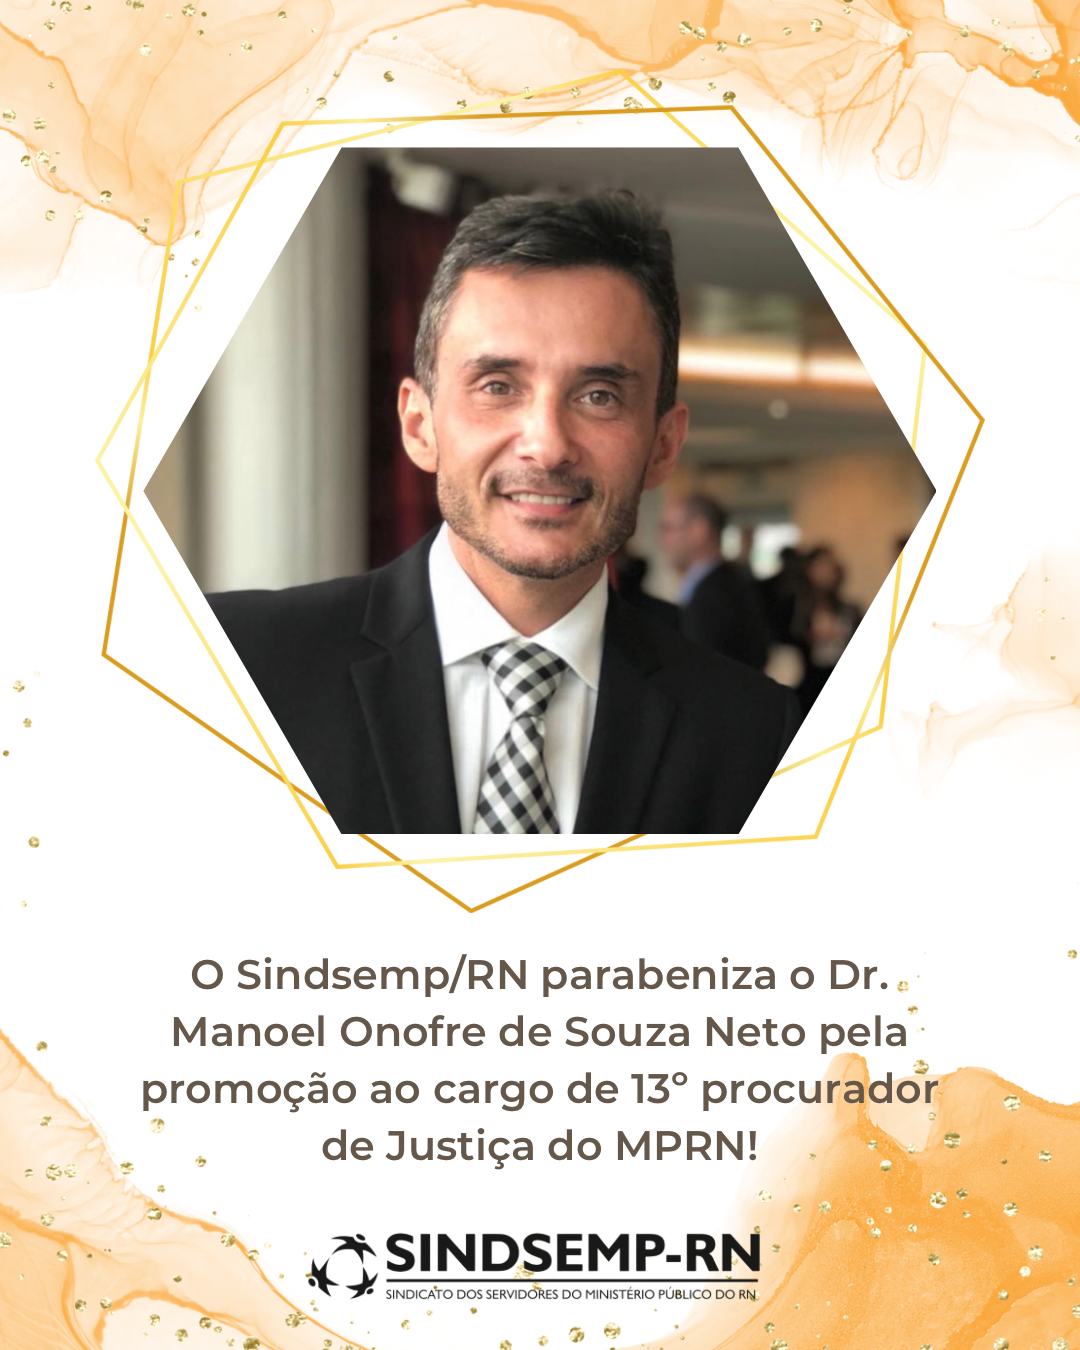 Sindsemp/RN parabeniza o Dr. Manoel Onofre de Souza Neto pela promoção ao cargo de 13º procurador de Justiça do MPRN